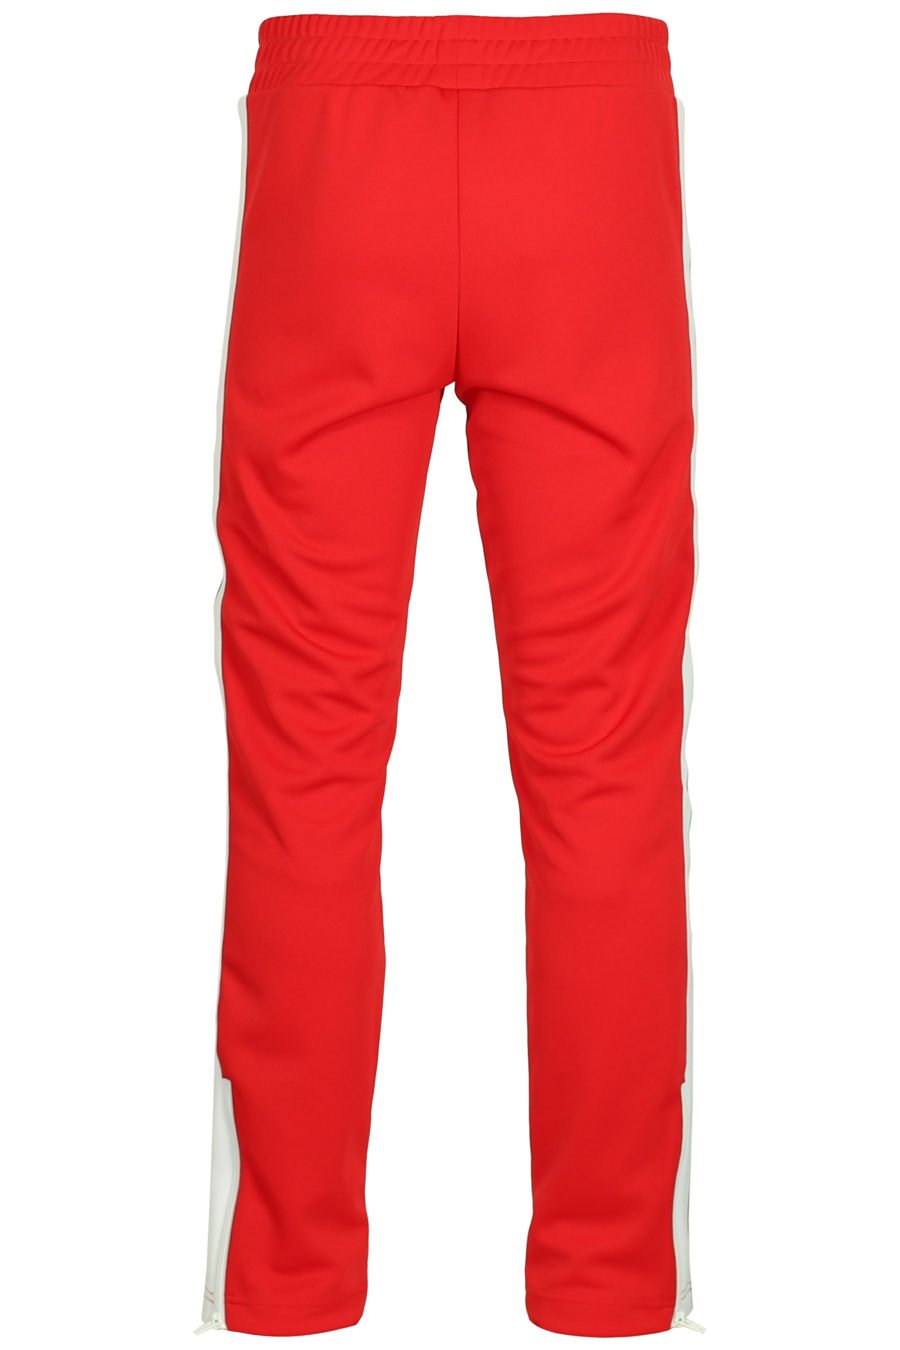 Pantalon rouge avec logo et bandes latérales - IMG 3768